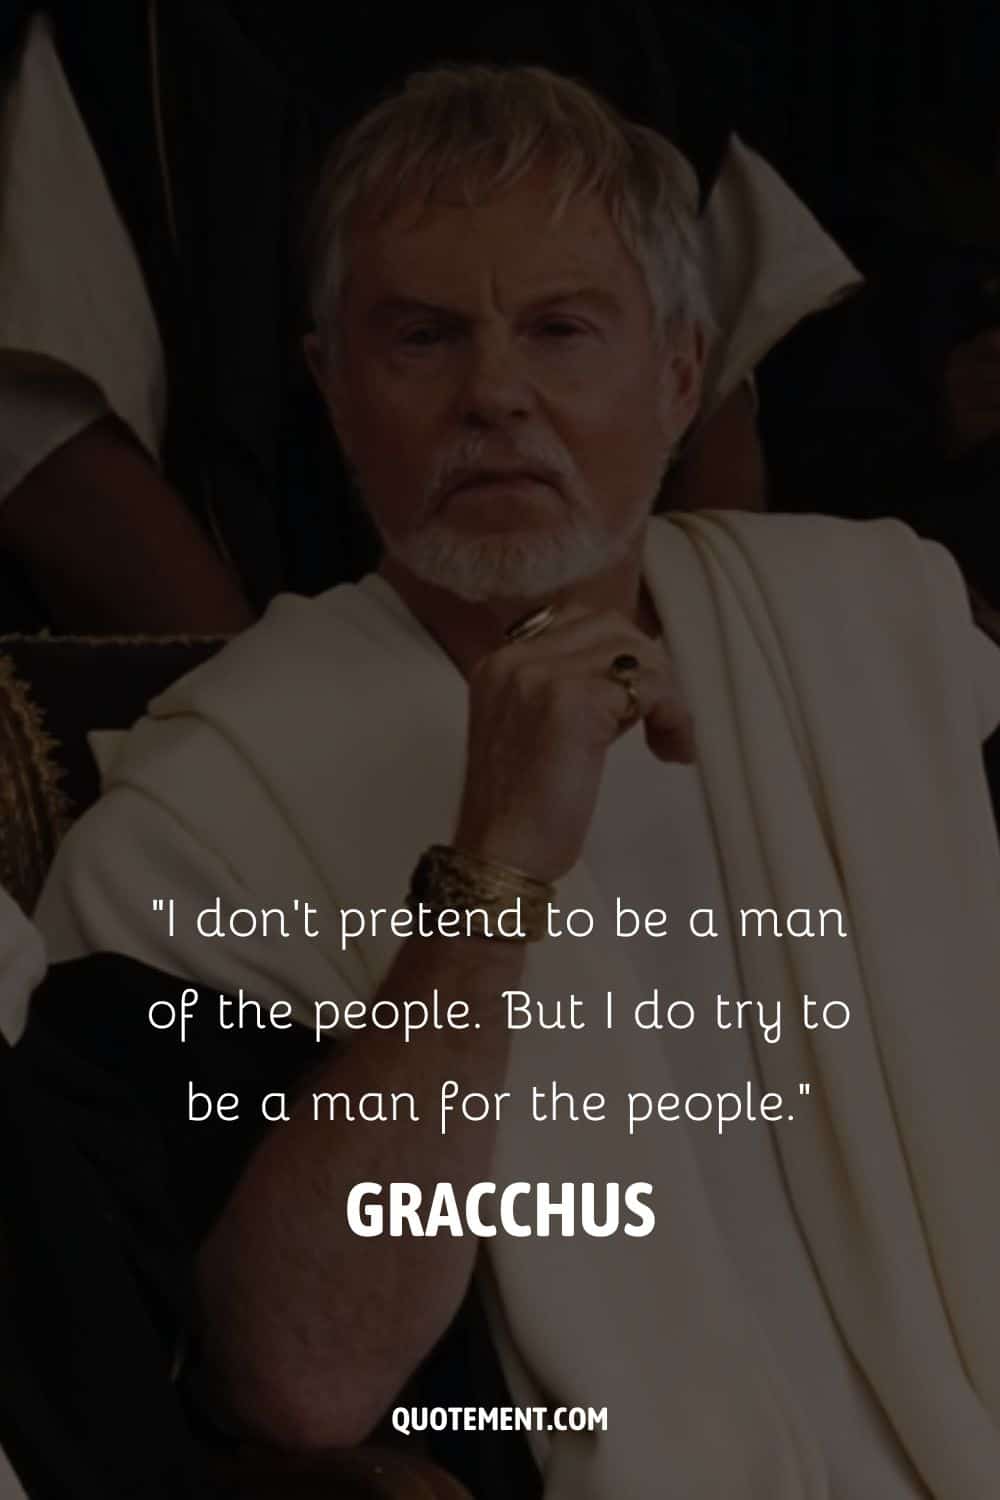 Gracchus, the influential senator in Gladiator movie.